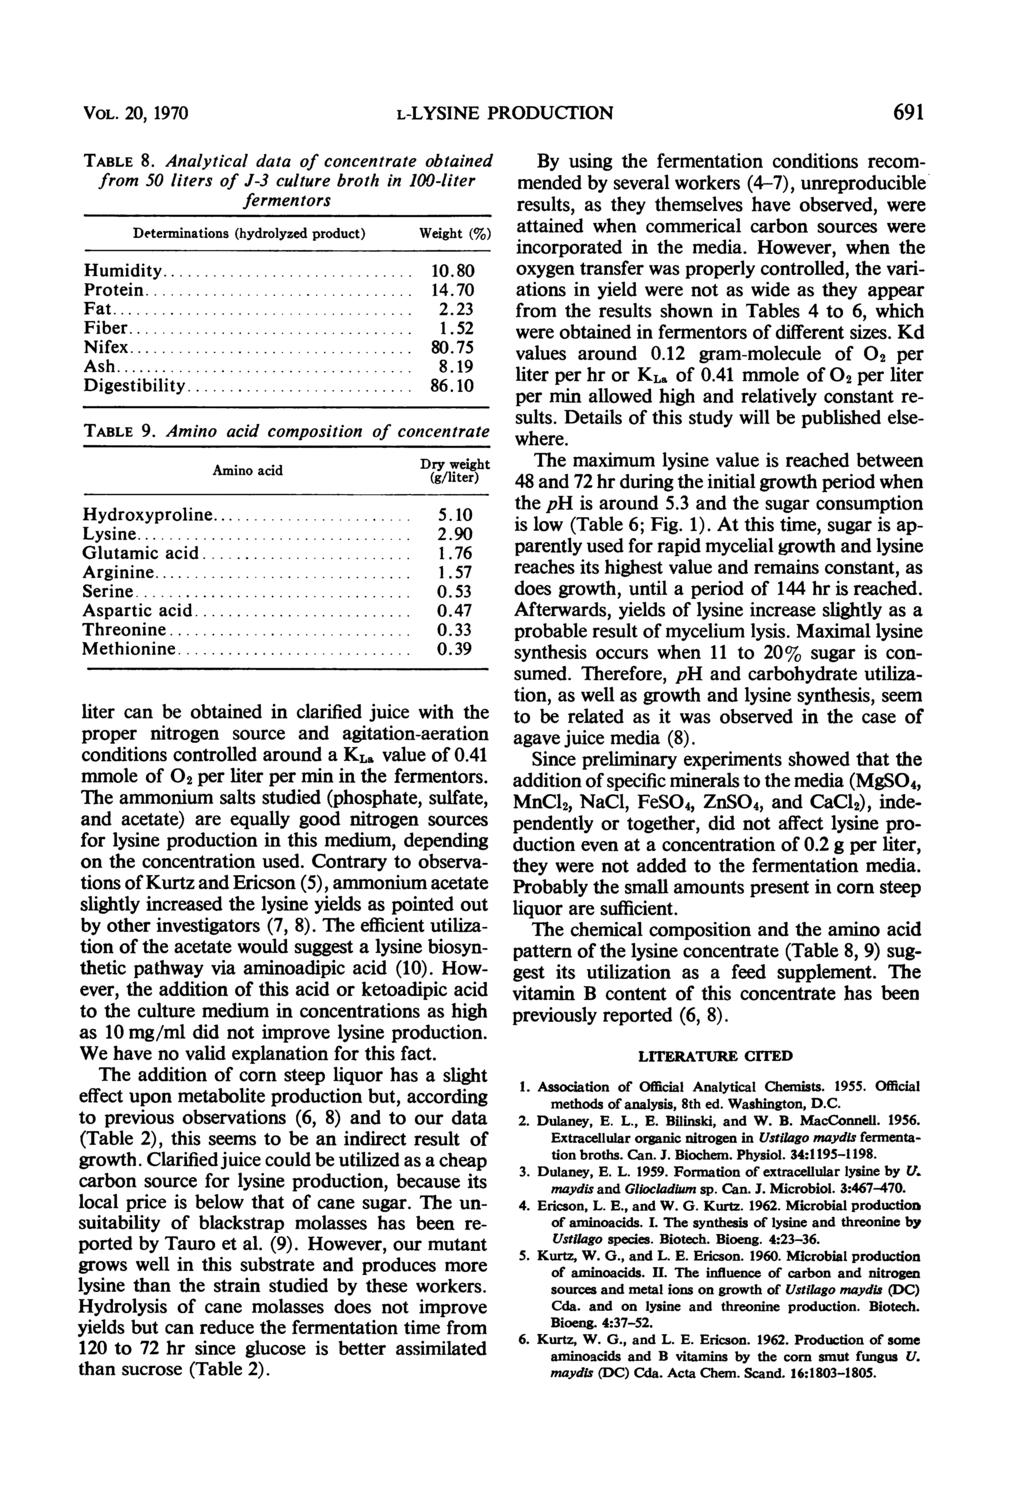 VOL. 20, 1970 L-LYSINE PRODUCTION 691 TABLE 8.